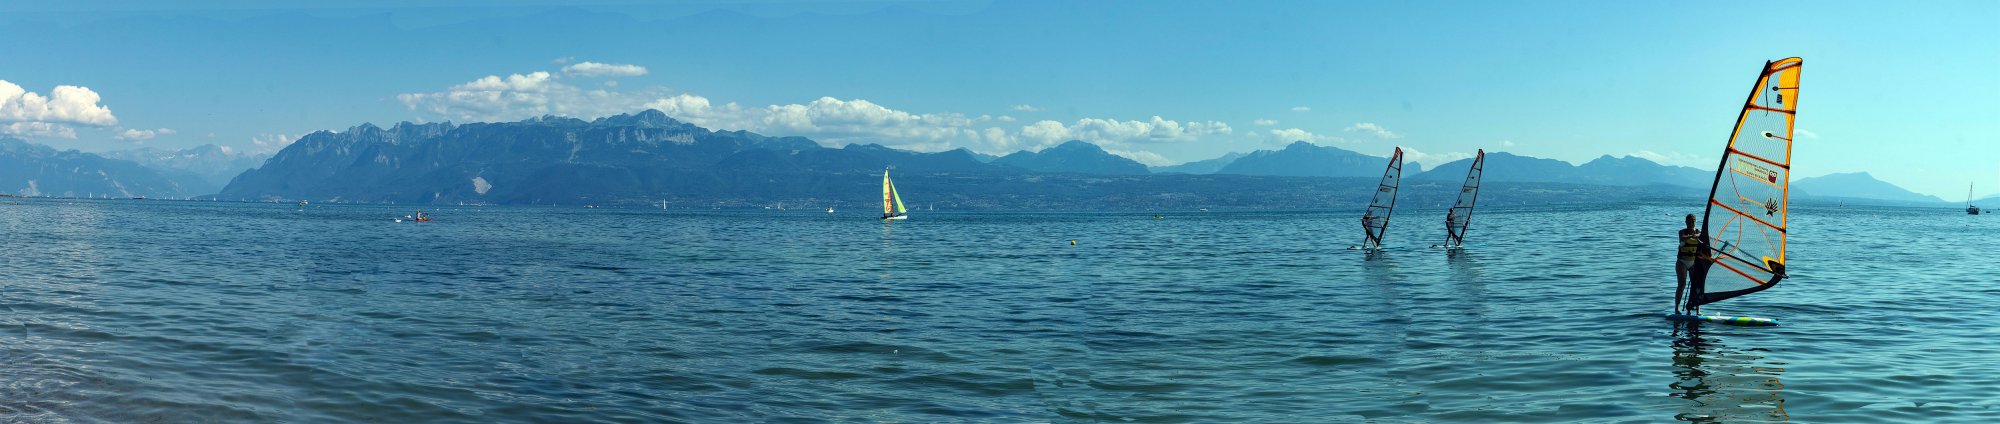 Lake Geneva 1 - 5000px.jpg